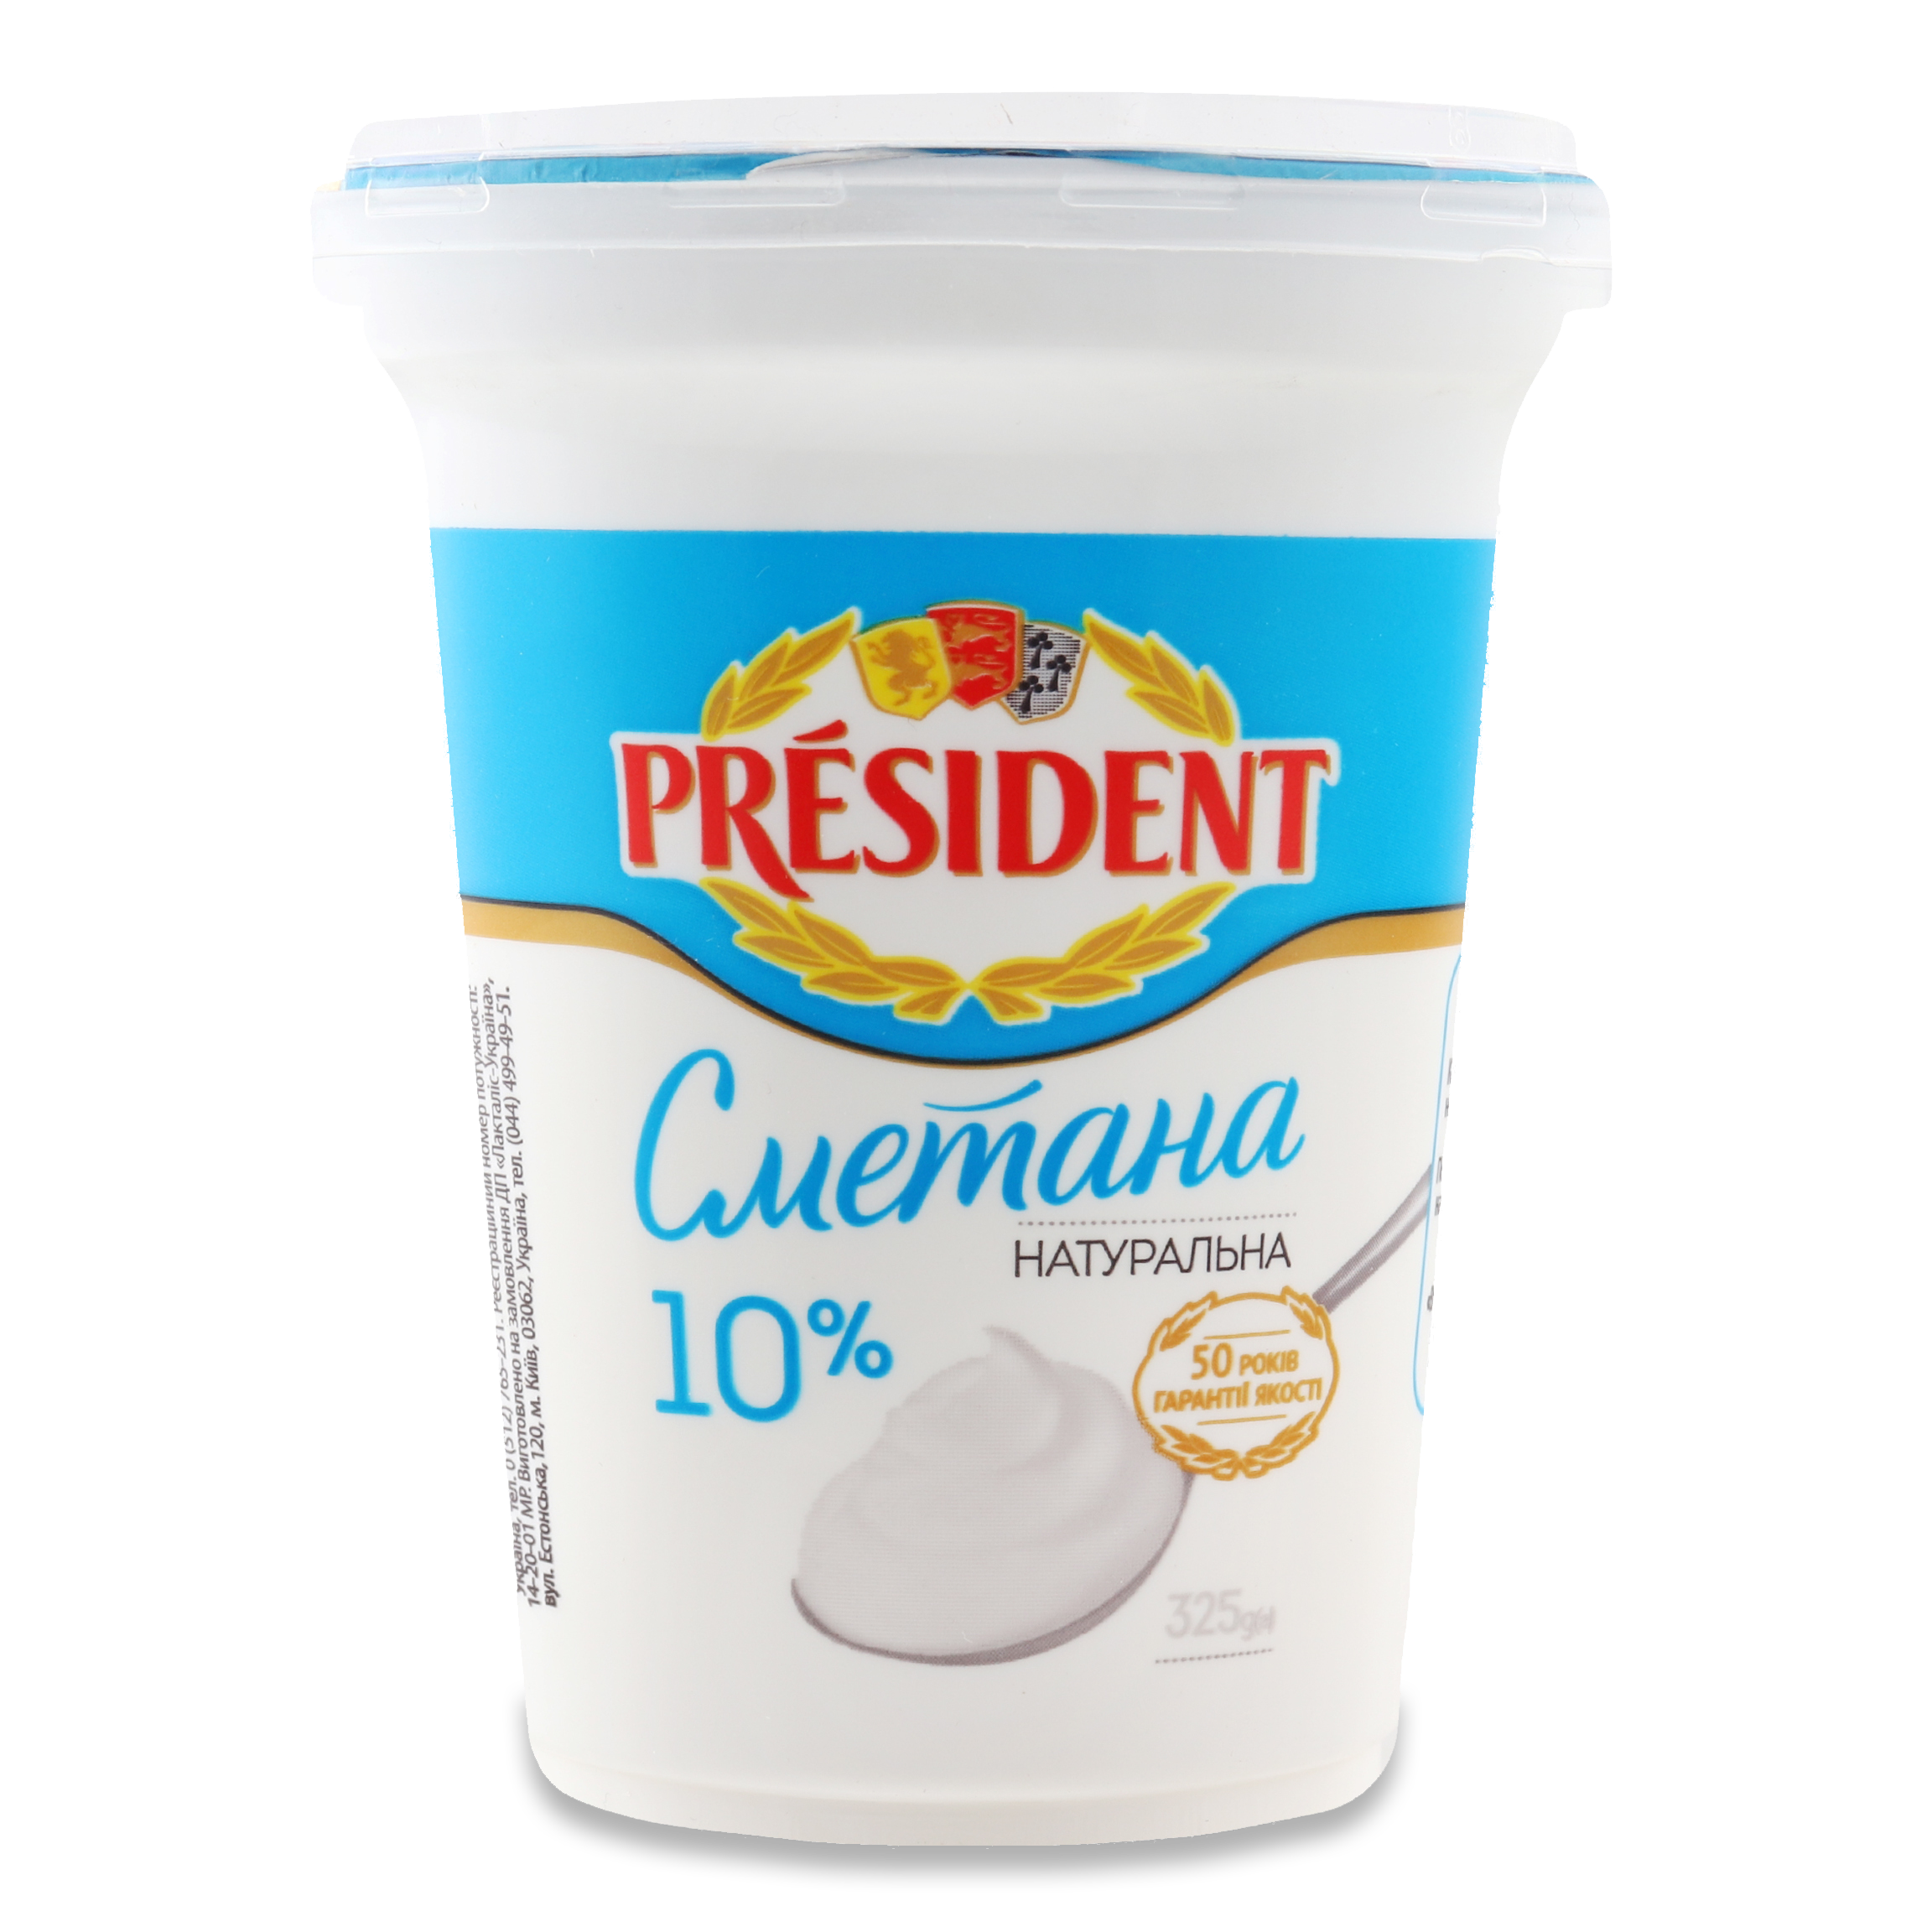 President Sour Cream 10% 325g